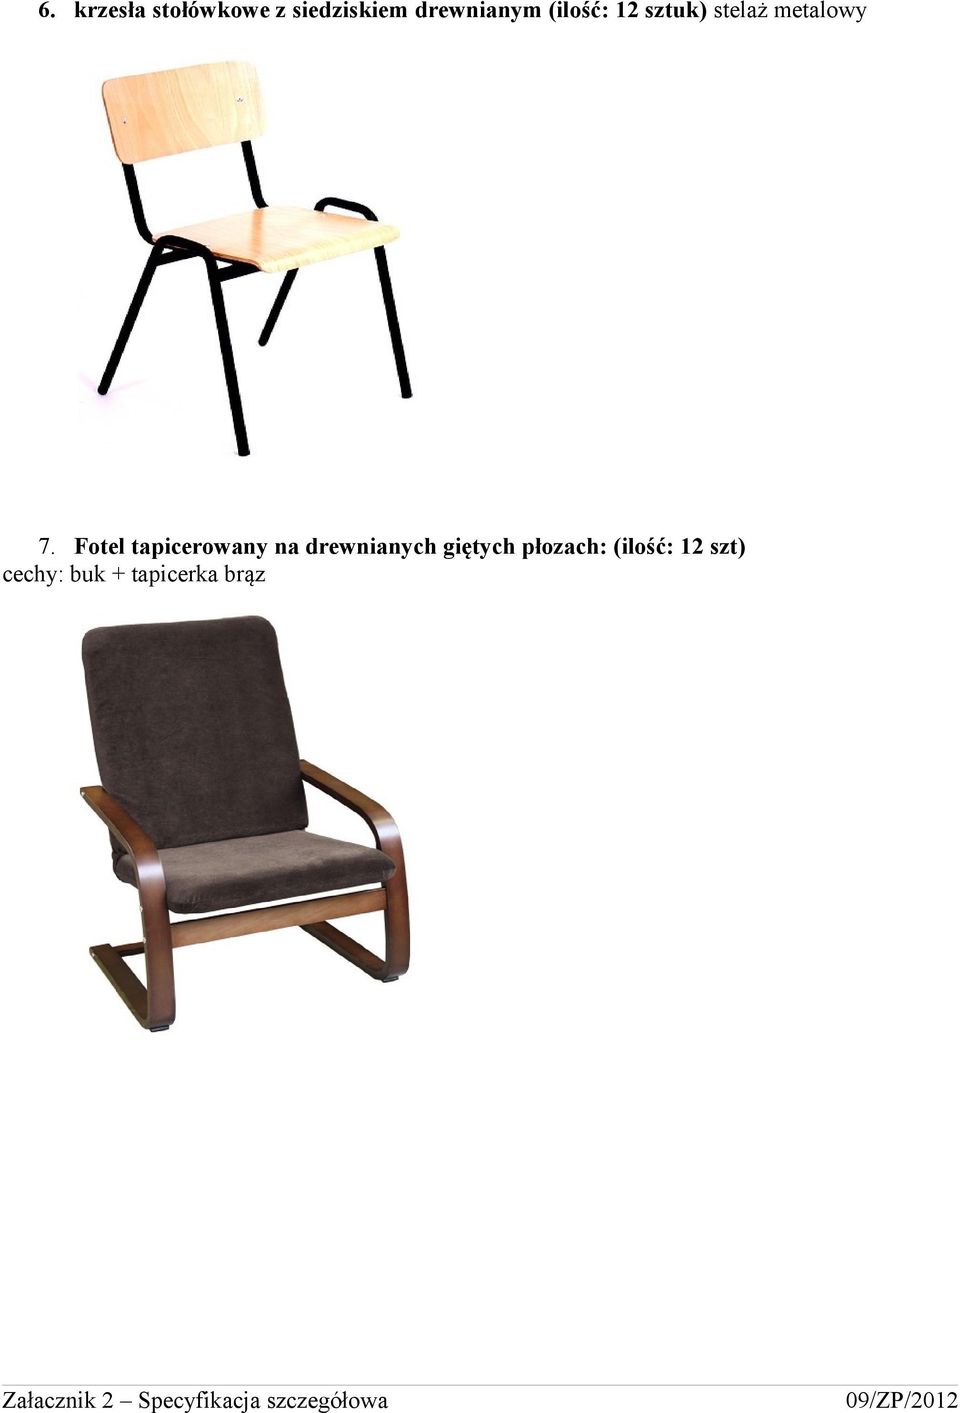 7. Fotel tapicerowany na drewnianych giętych